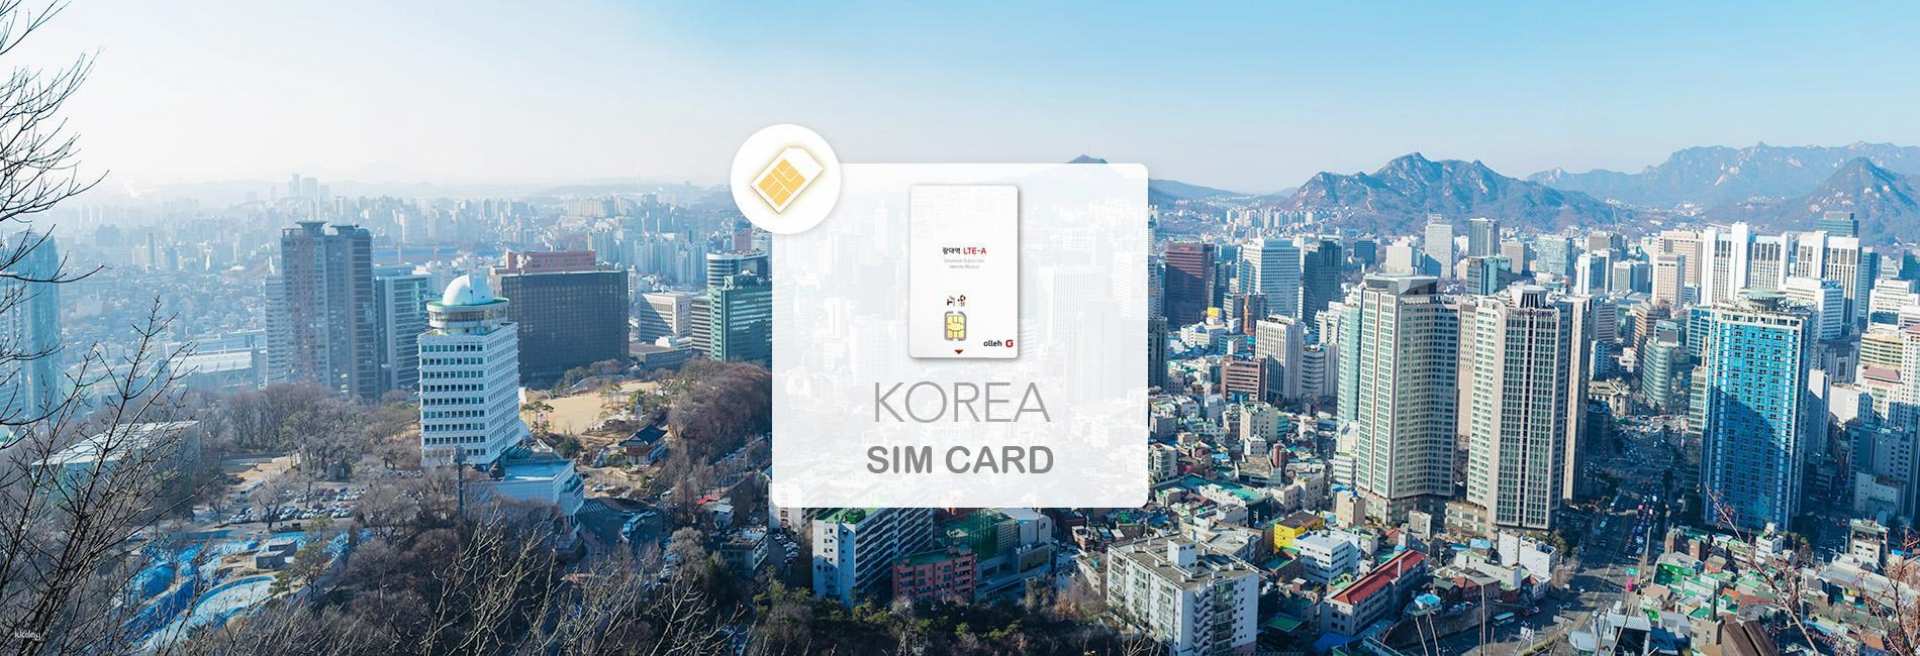 韓國-KT Olleh上網卡| 桃園機場領取